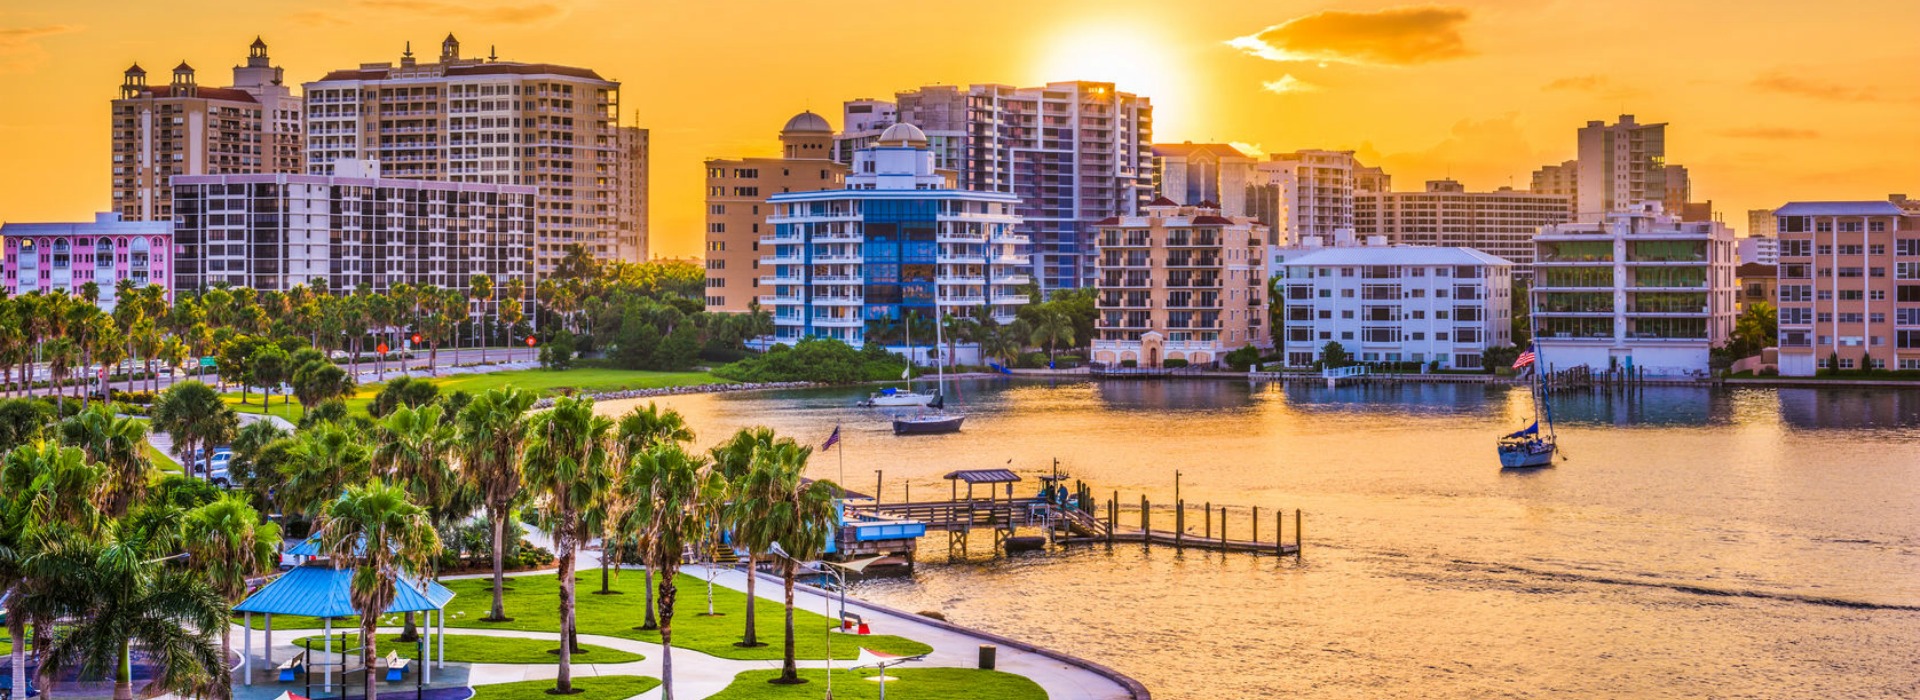 Sarasota FL skyline | sarasota real estate professional